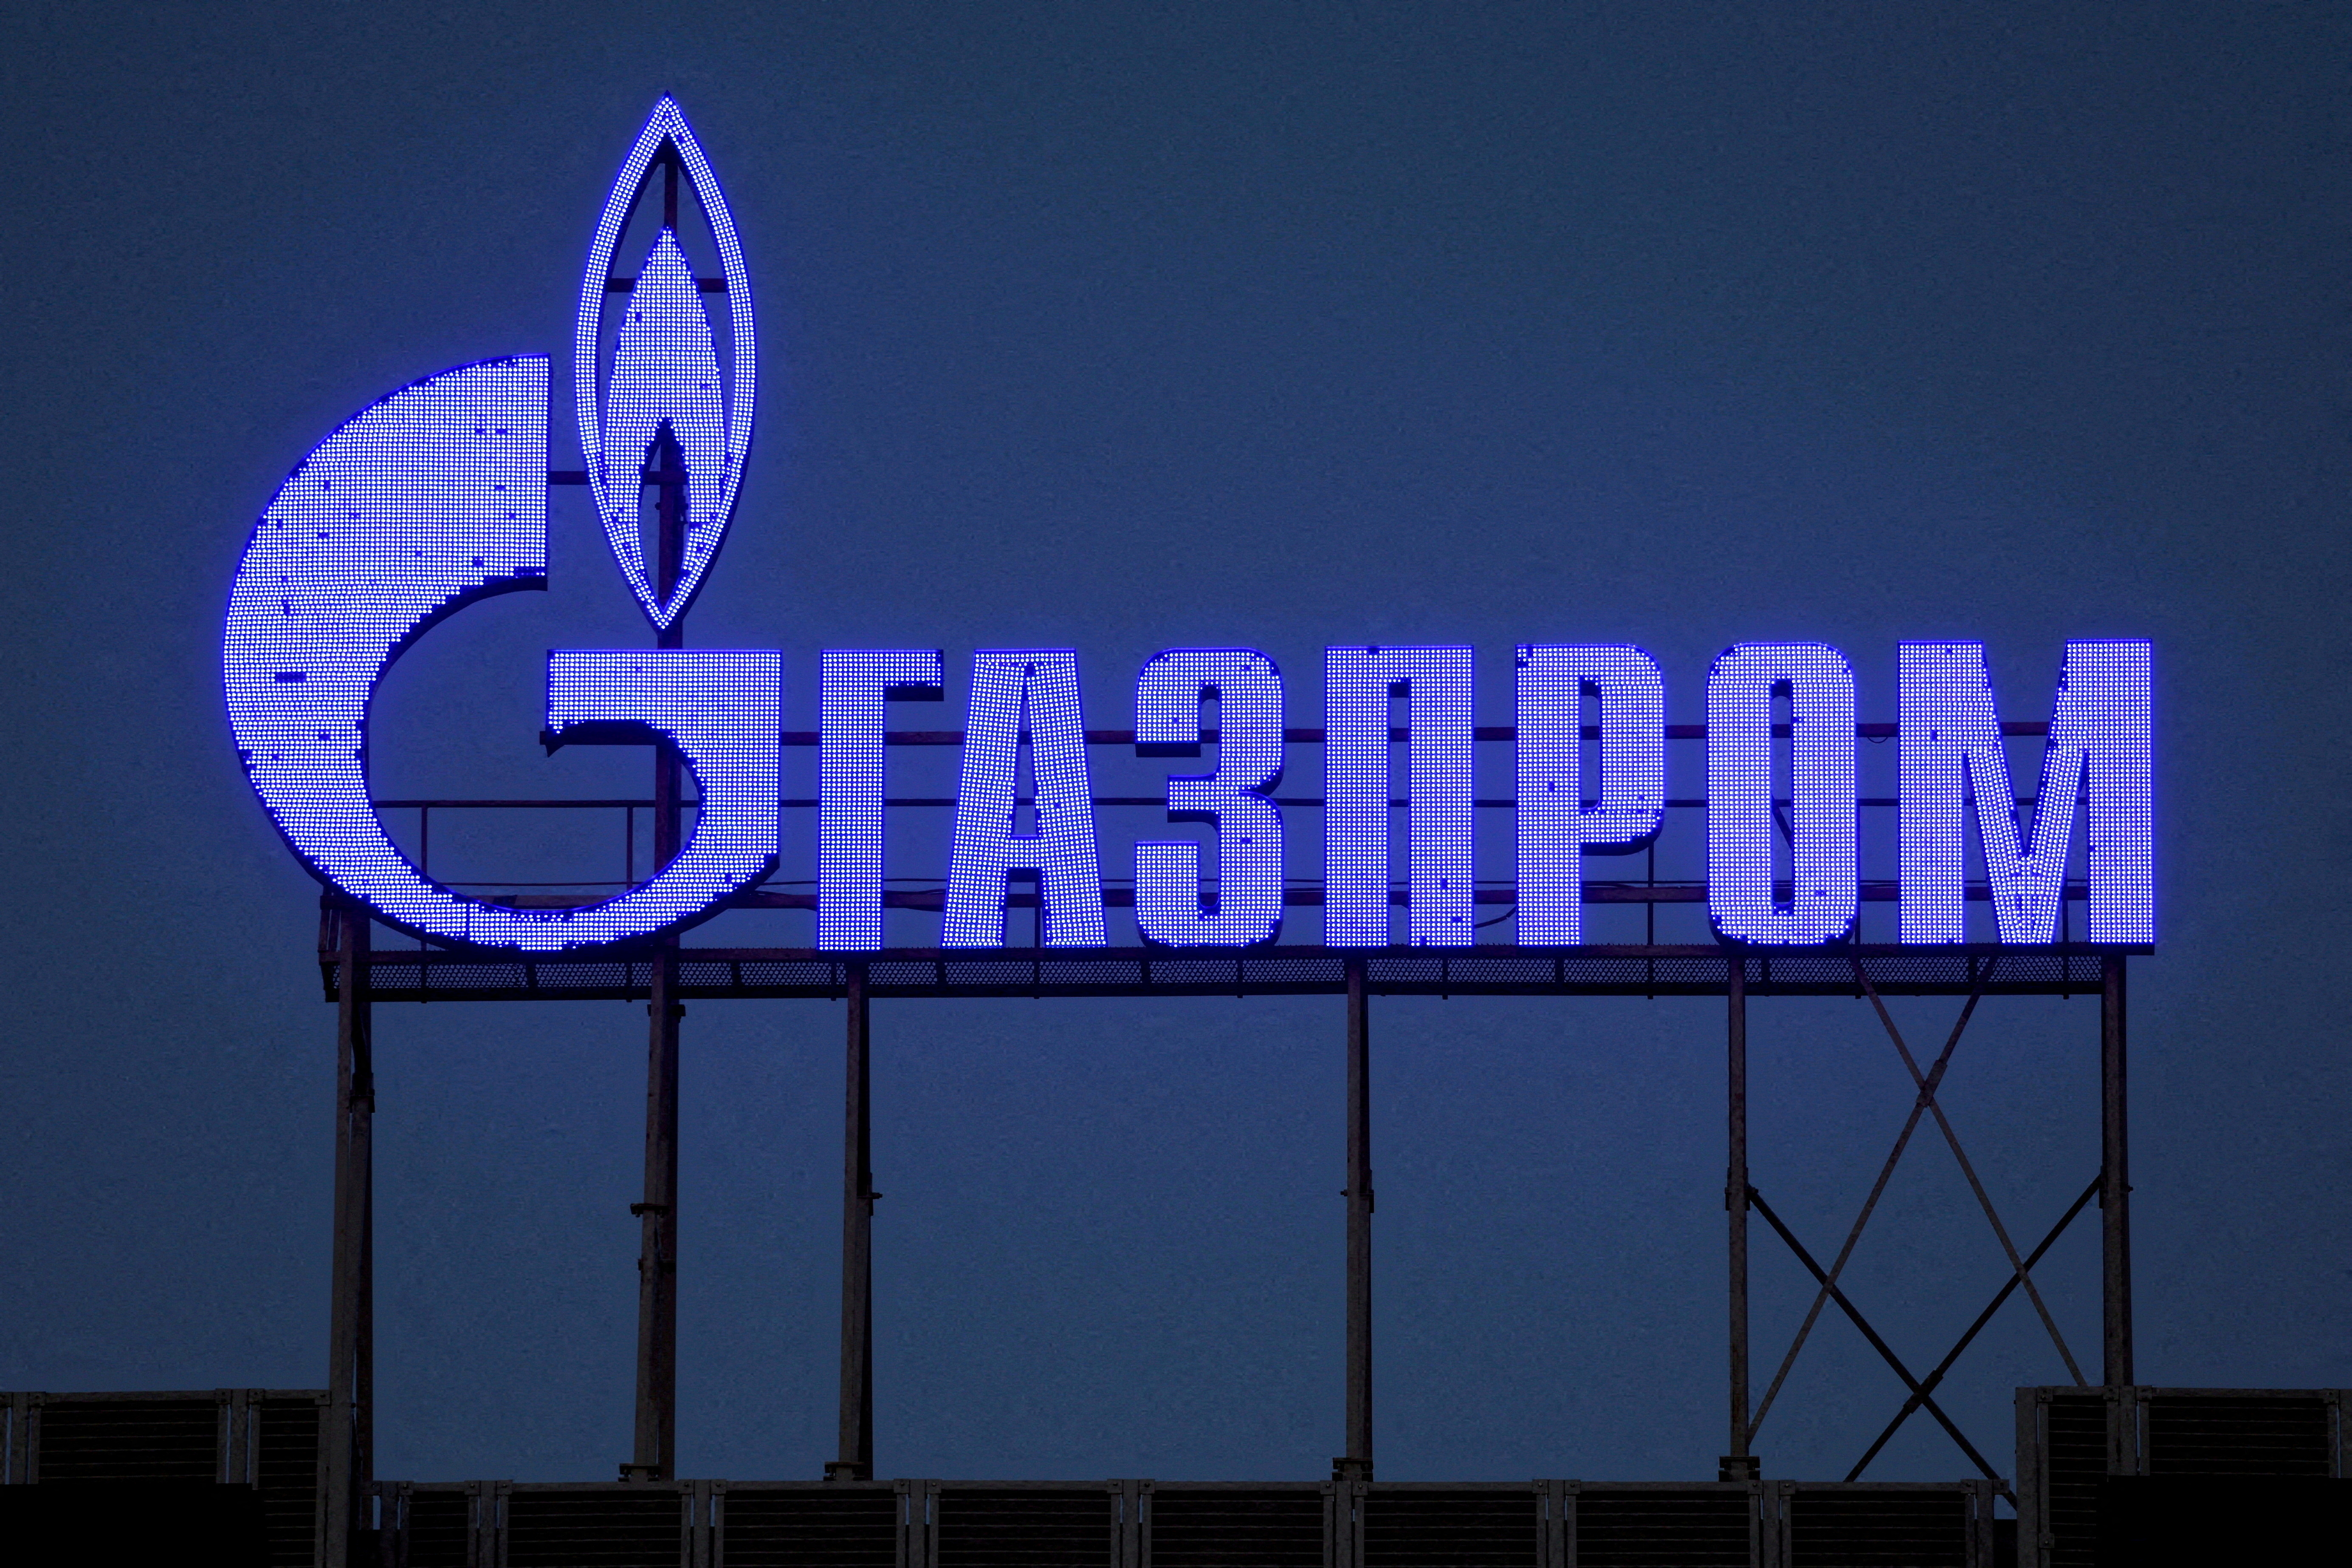 La empresa rusa Gazprom lleva años estudiando la posibilidad de construir un nuevo gasoducto que atraviese Mongolia y lleve el gas ruso a China (REUTERS)